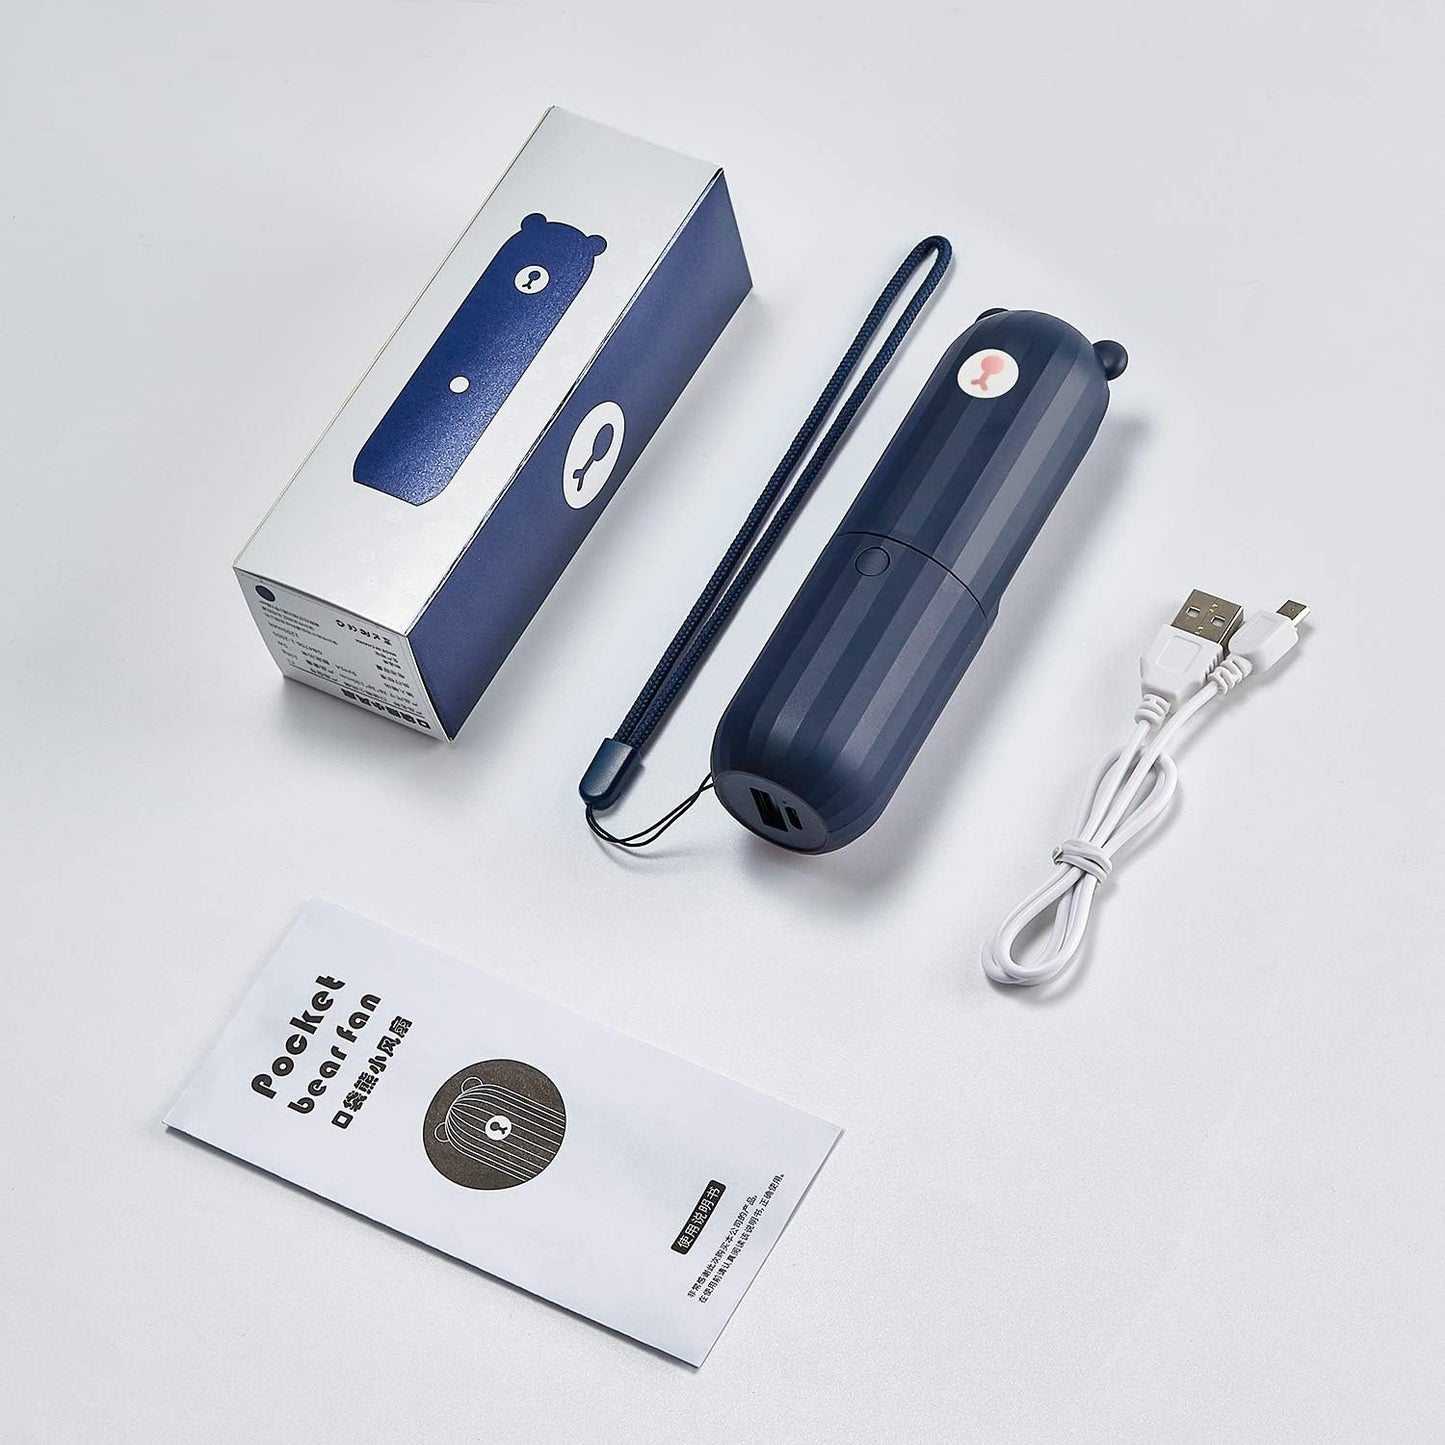 SmartDevil Mini ventilador de mano, ventilador de mano portátil 2 en 1, pequeño ventilador de bolsillo personal recargable, funciona como banco de energía, doble velocidad ajustable, mini ventilador para mujeres, viajes, al aire libre (azul)